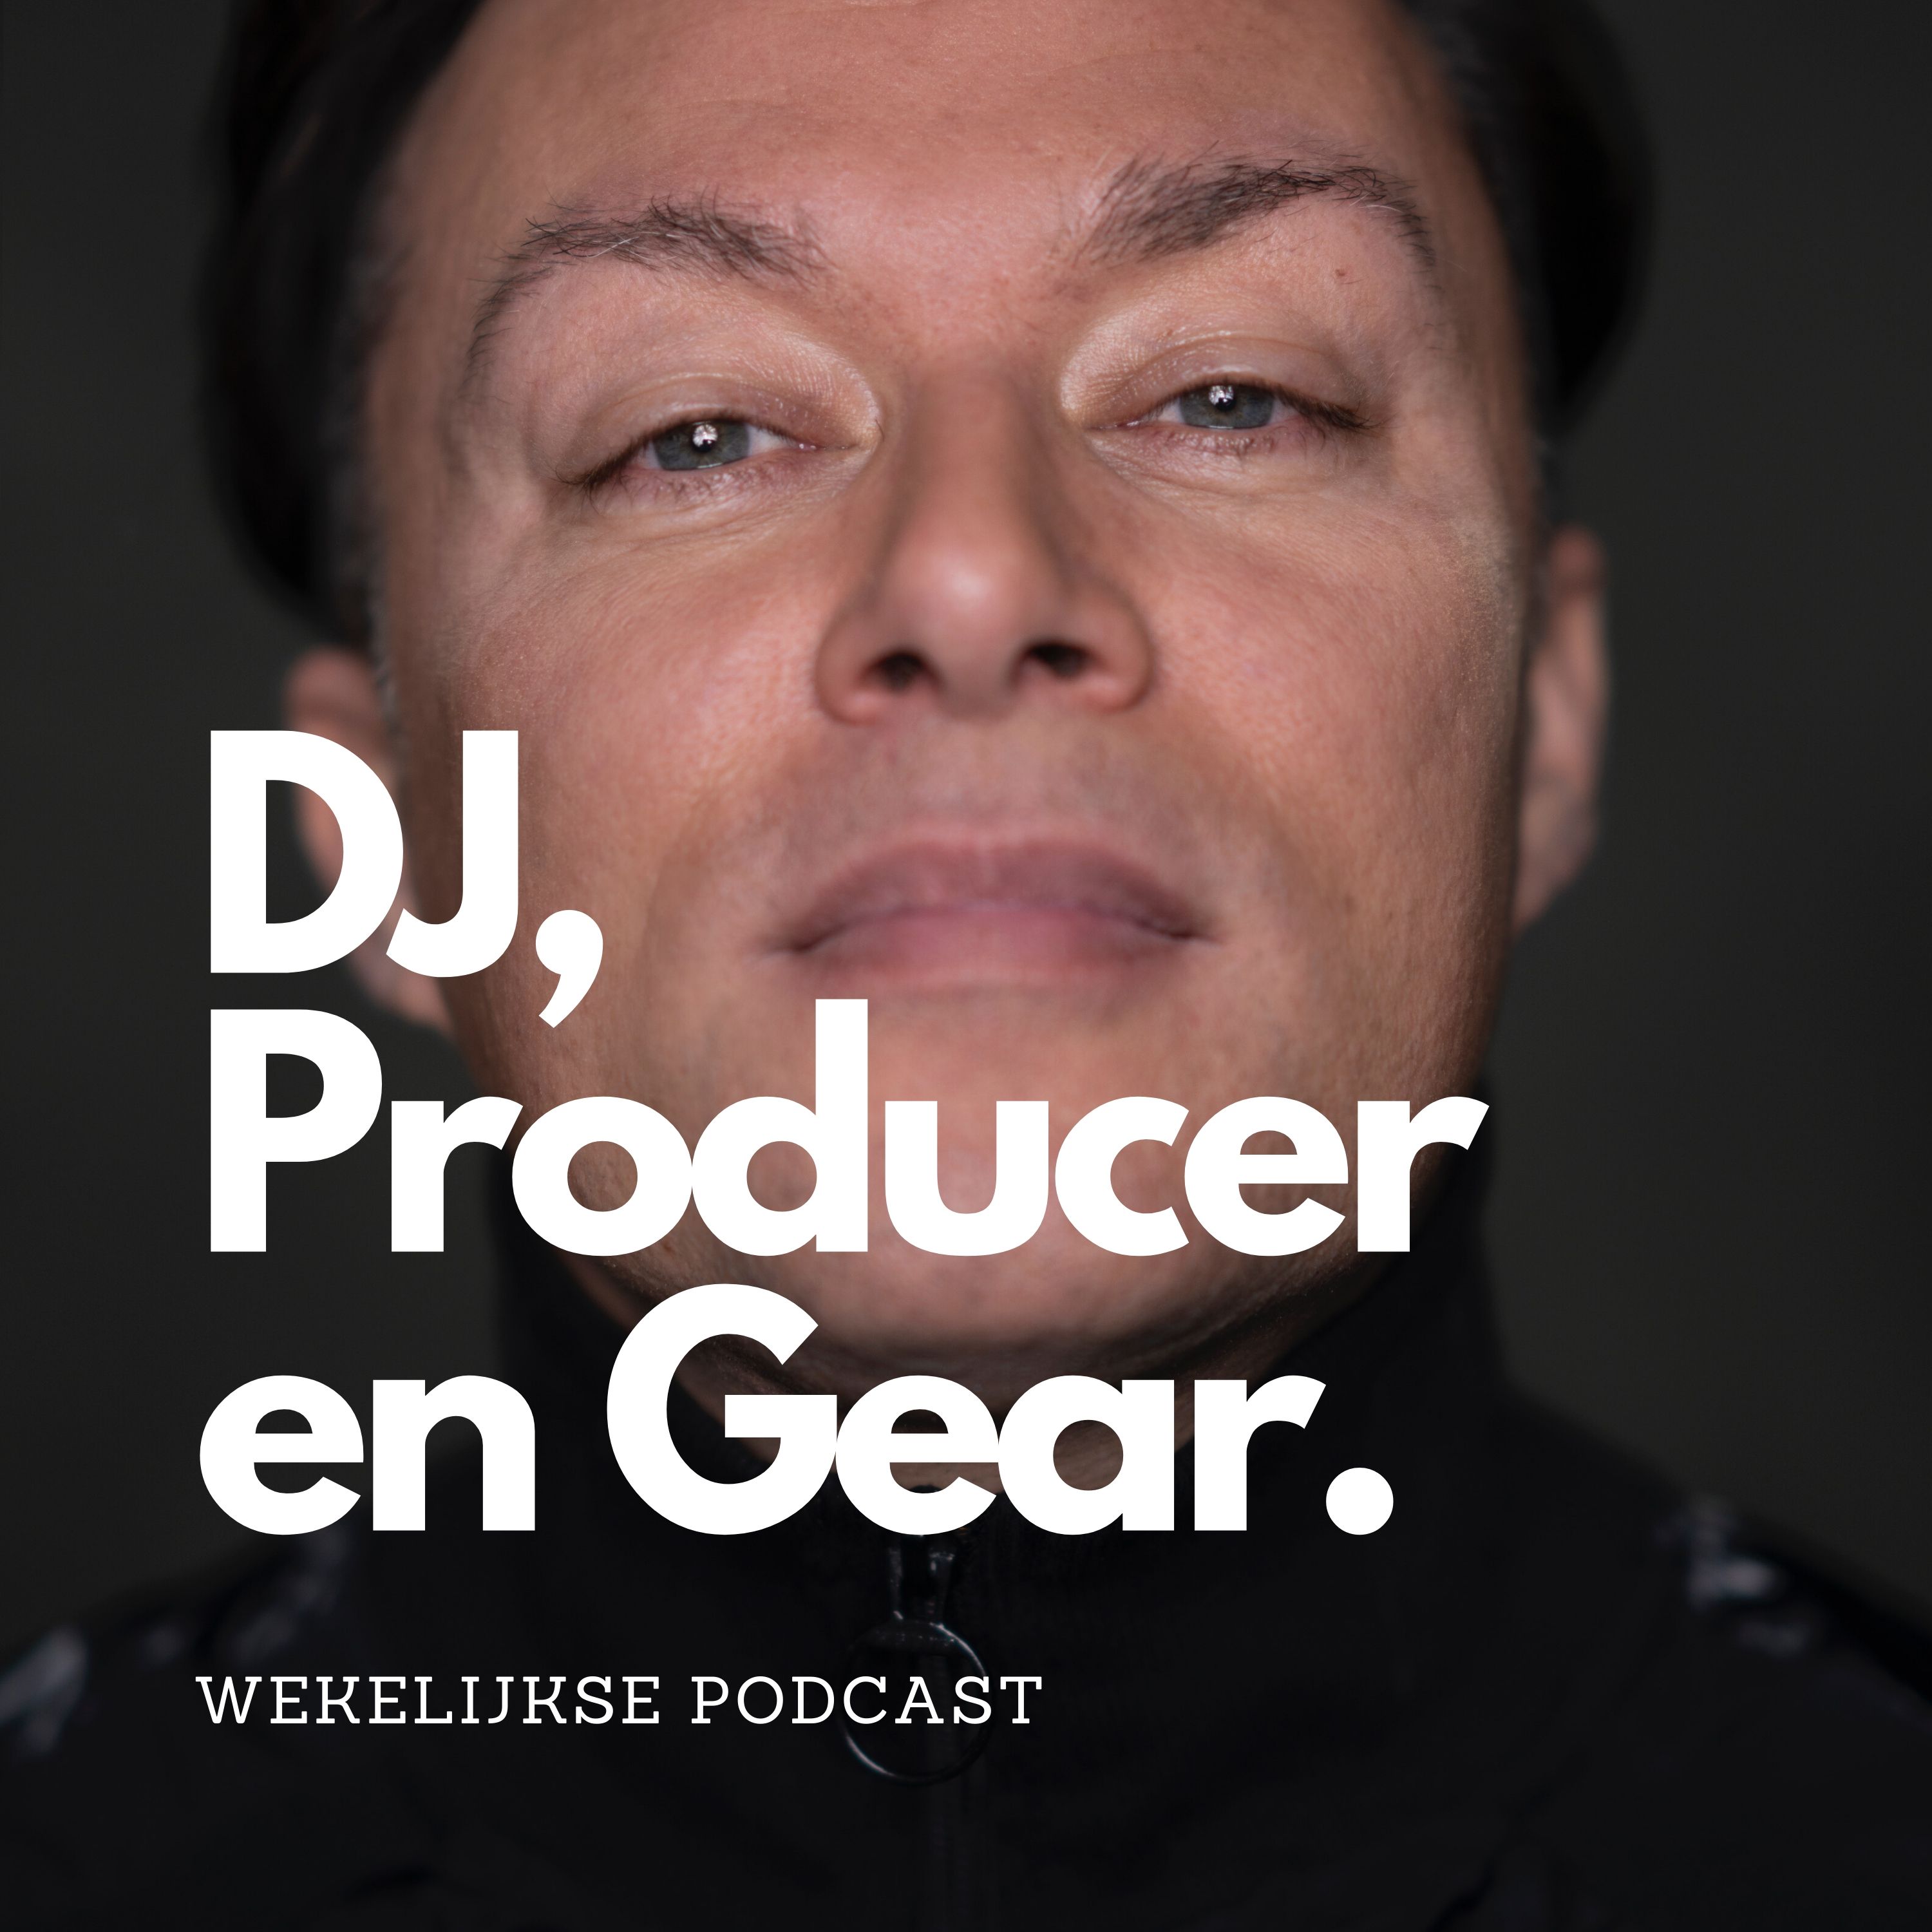 Artwork for podcast DJ, Producer en Gear